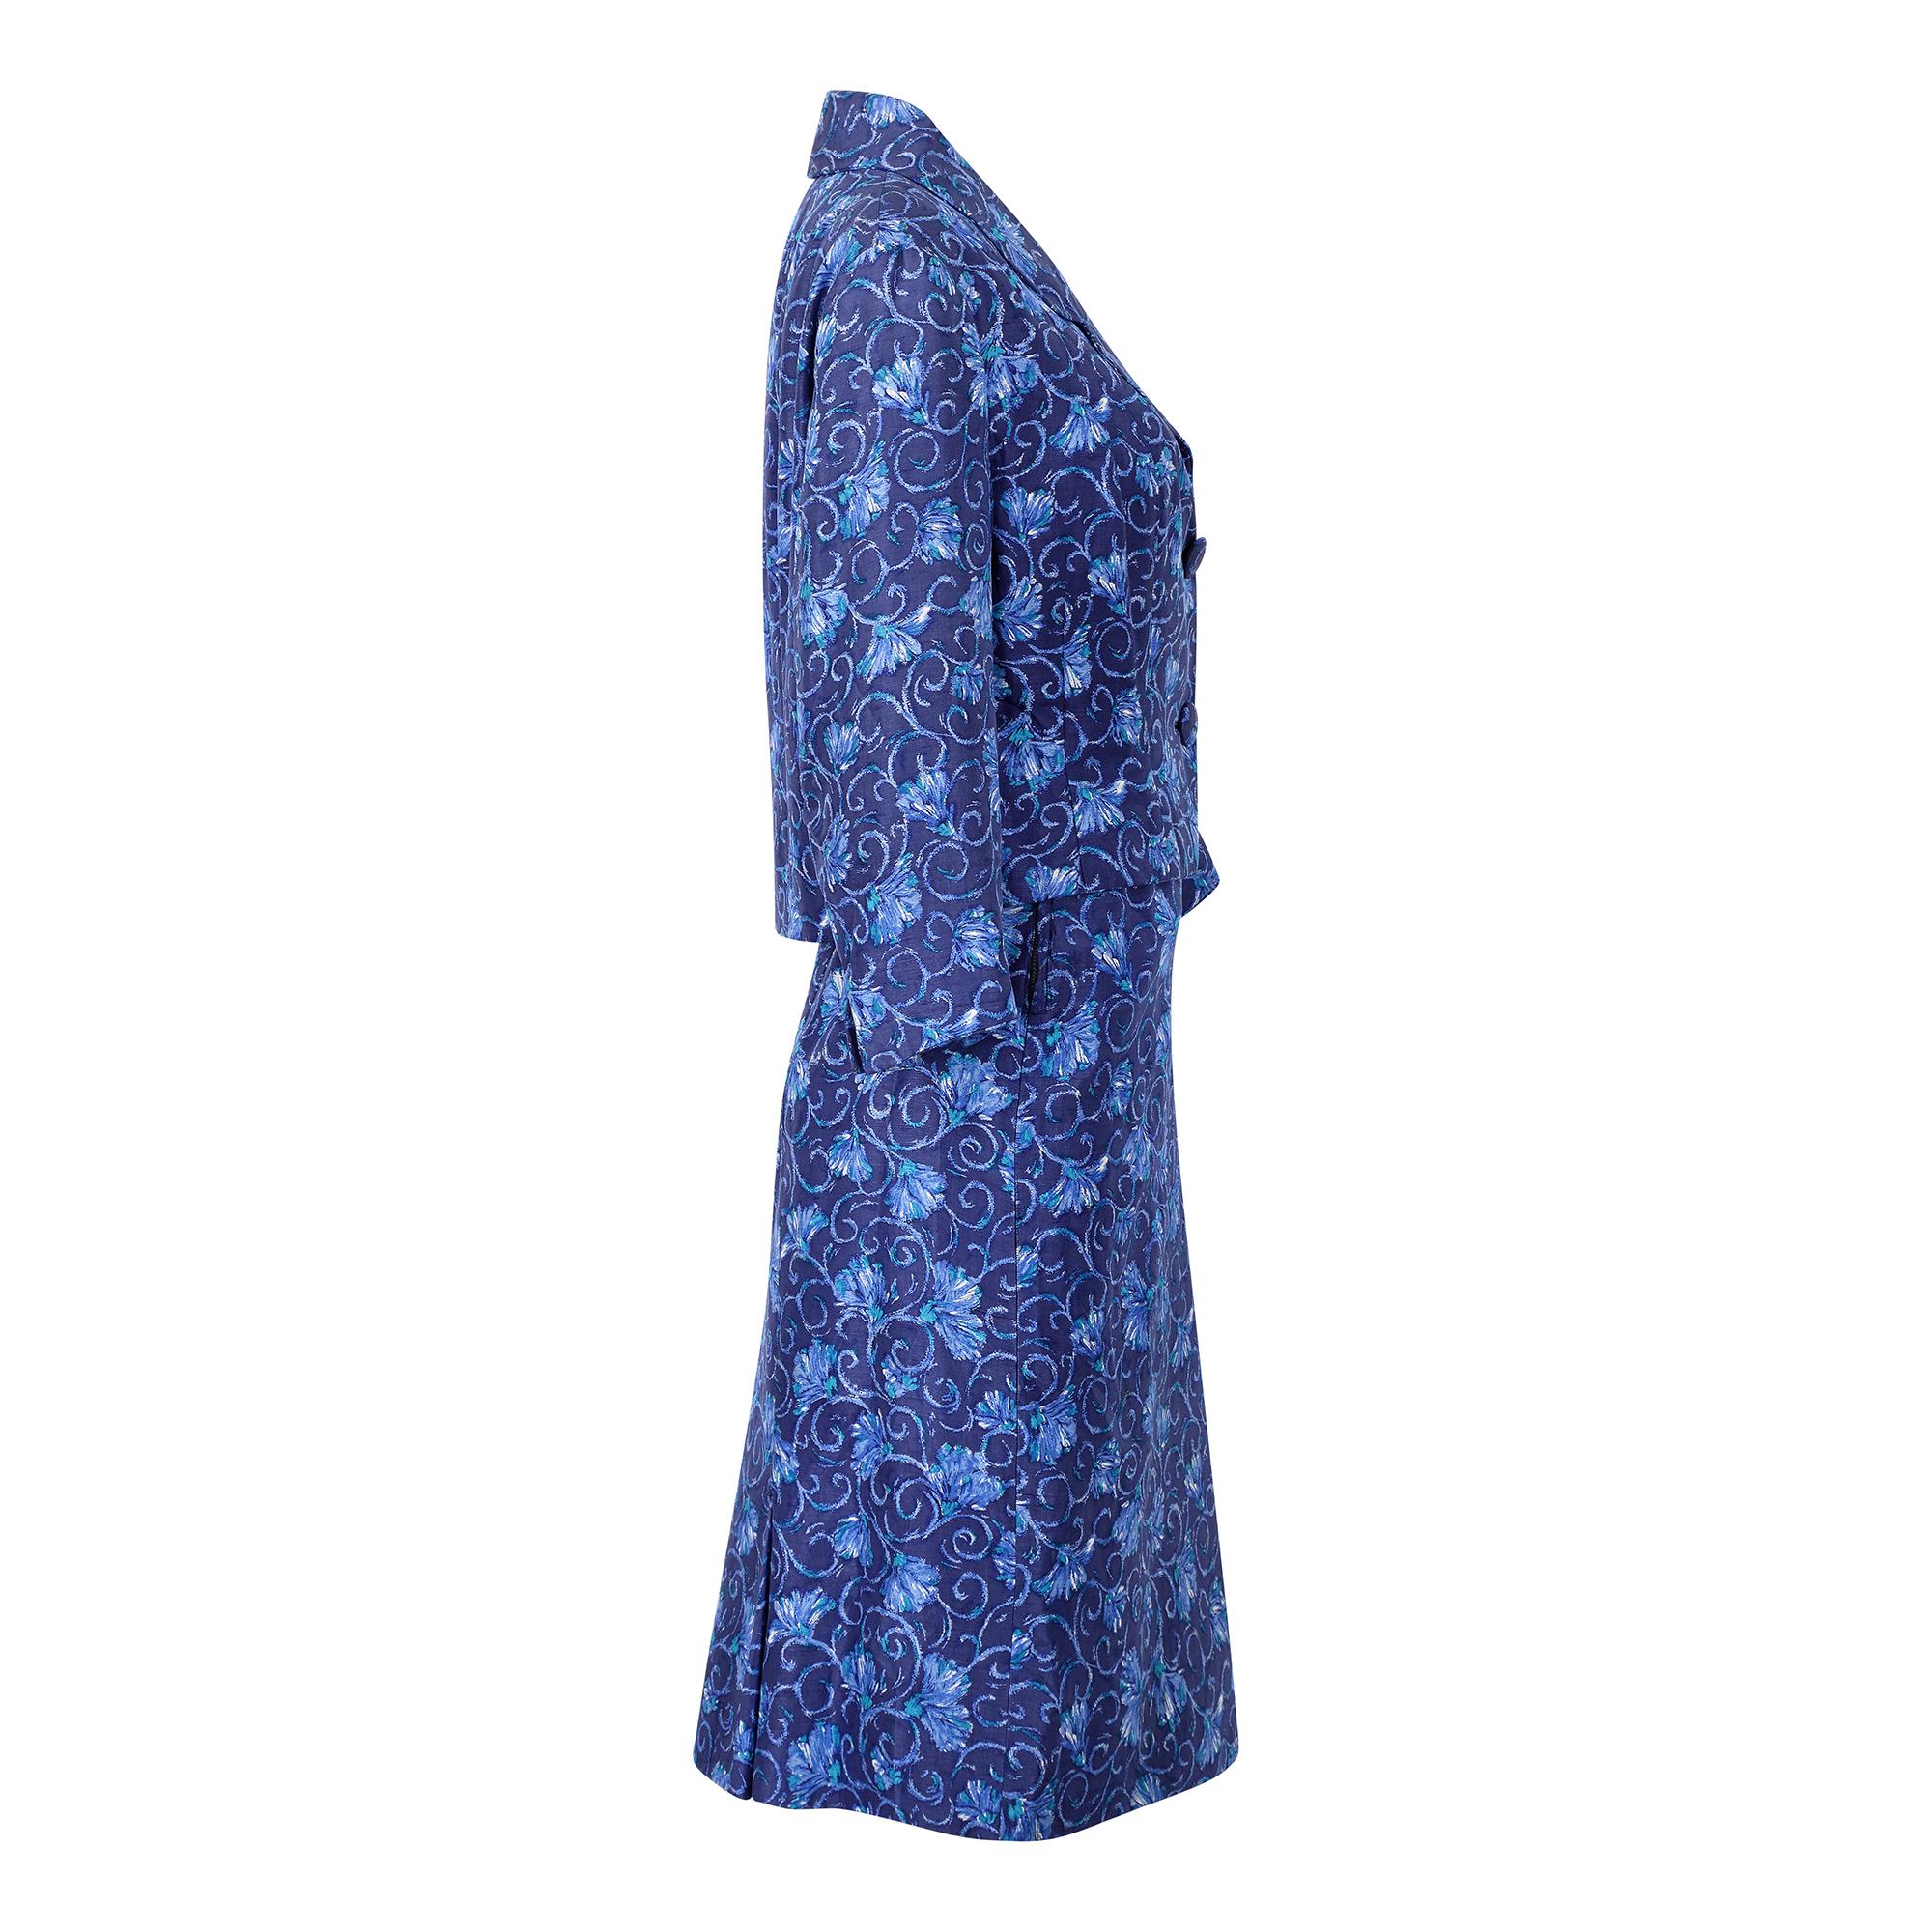 Dieser originale Seidenrockanzug aus den 1950er Jahren stammt vom königlichen Modeschöpfer Hardy Amies, einem der bekanntesten Namen der britischen Gesellschaftsmode der 50er und 60er Jahre. Der Stoff ist in einem wunderschönen, leuchtenden Blau